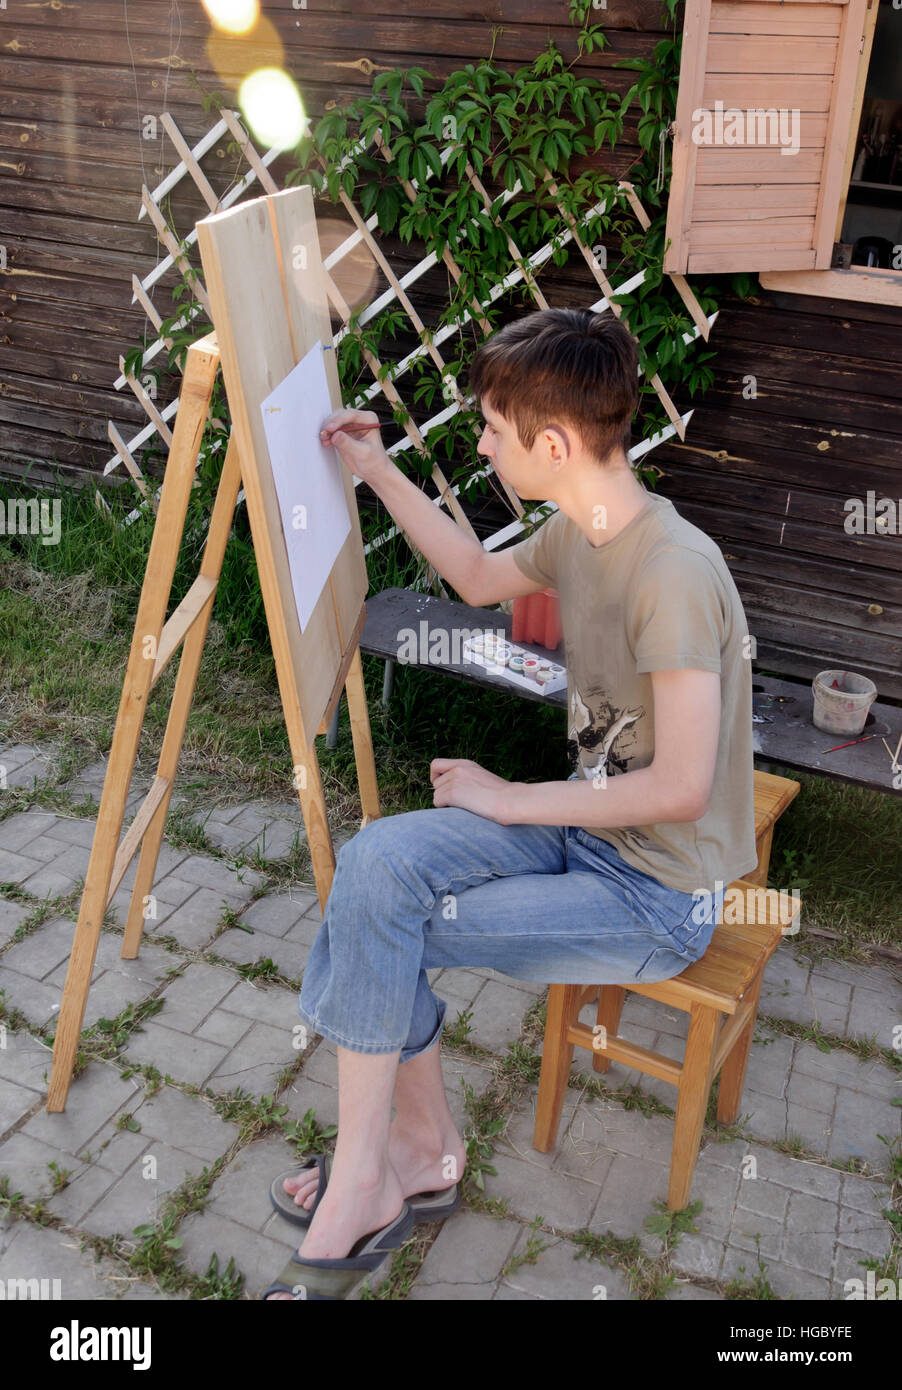 Junge malt an der Staffelei im Garten Stockfoto